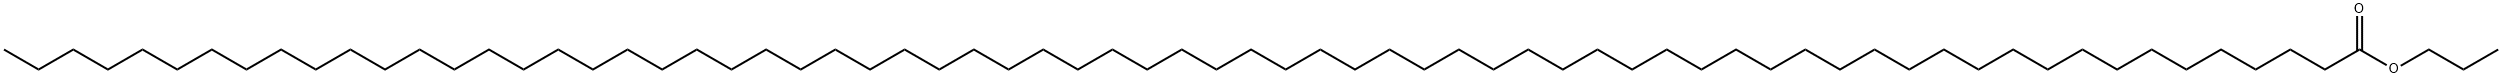 Nonahexacontanoic acid propyl ester Structure